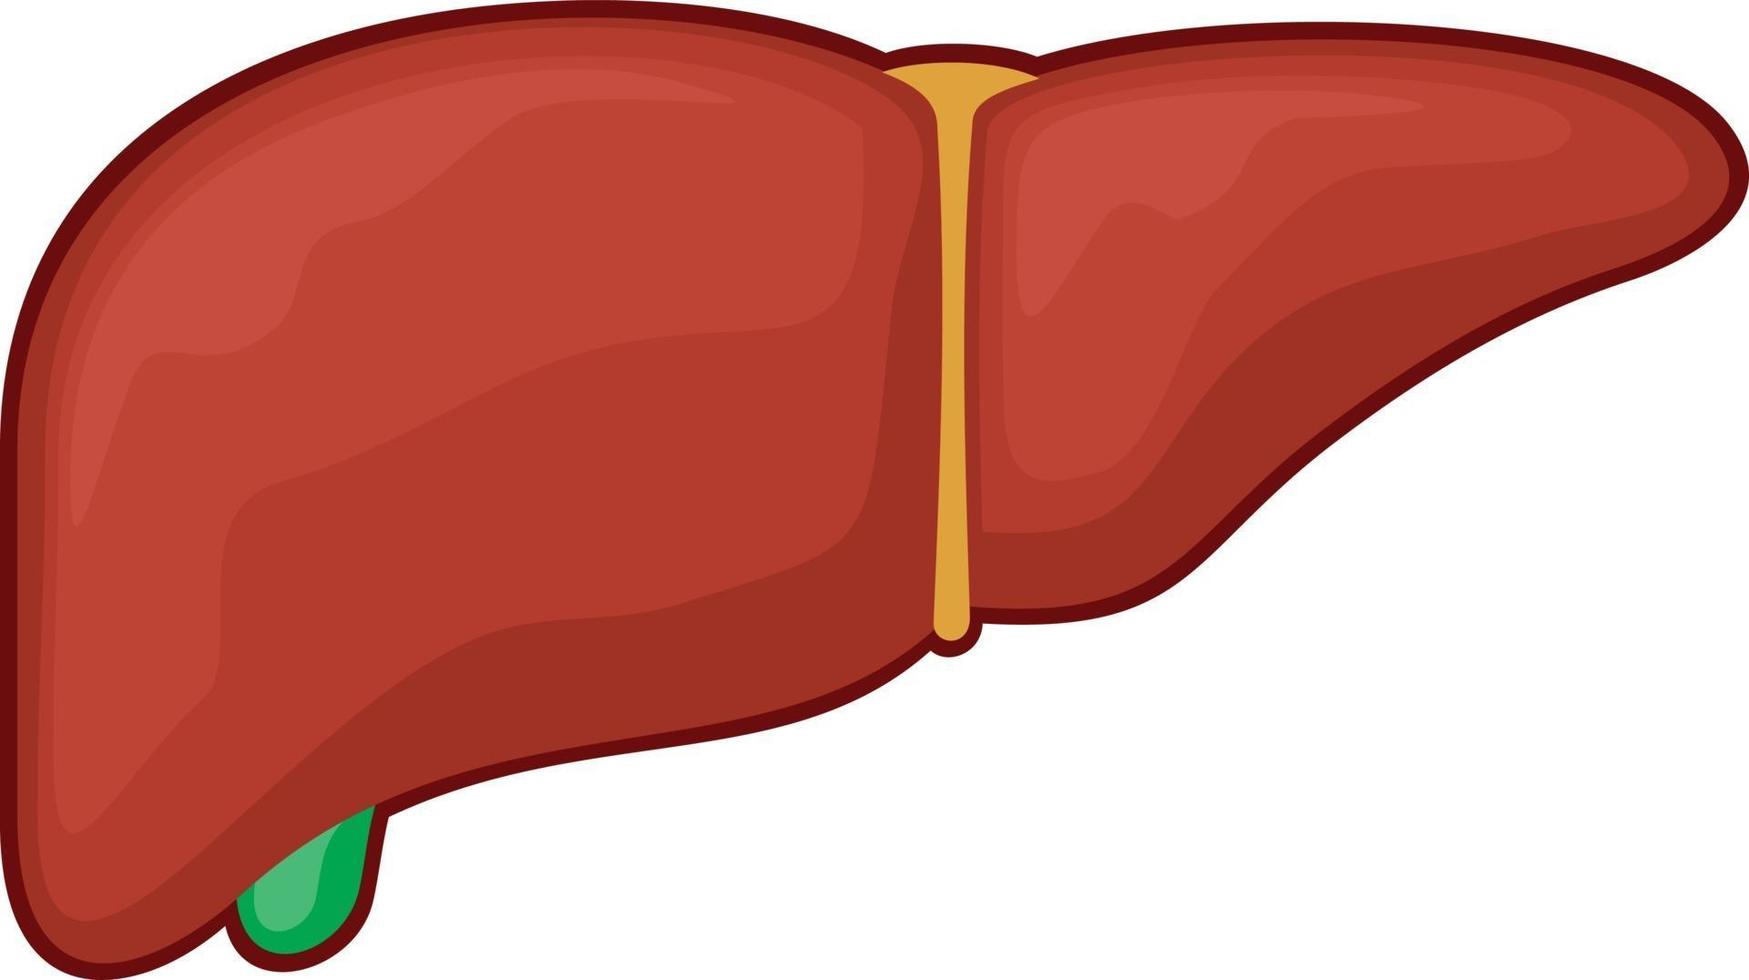 Human Liver Organ vector